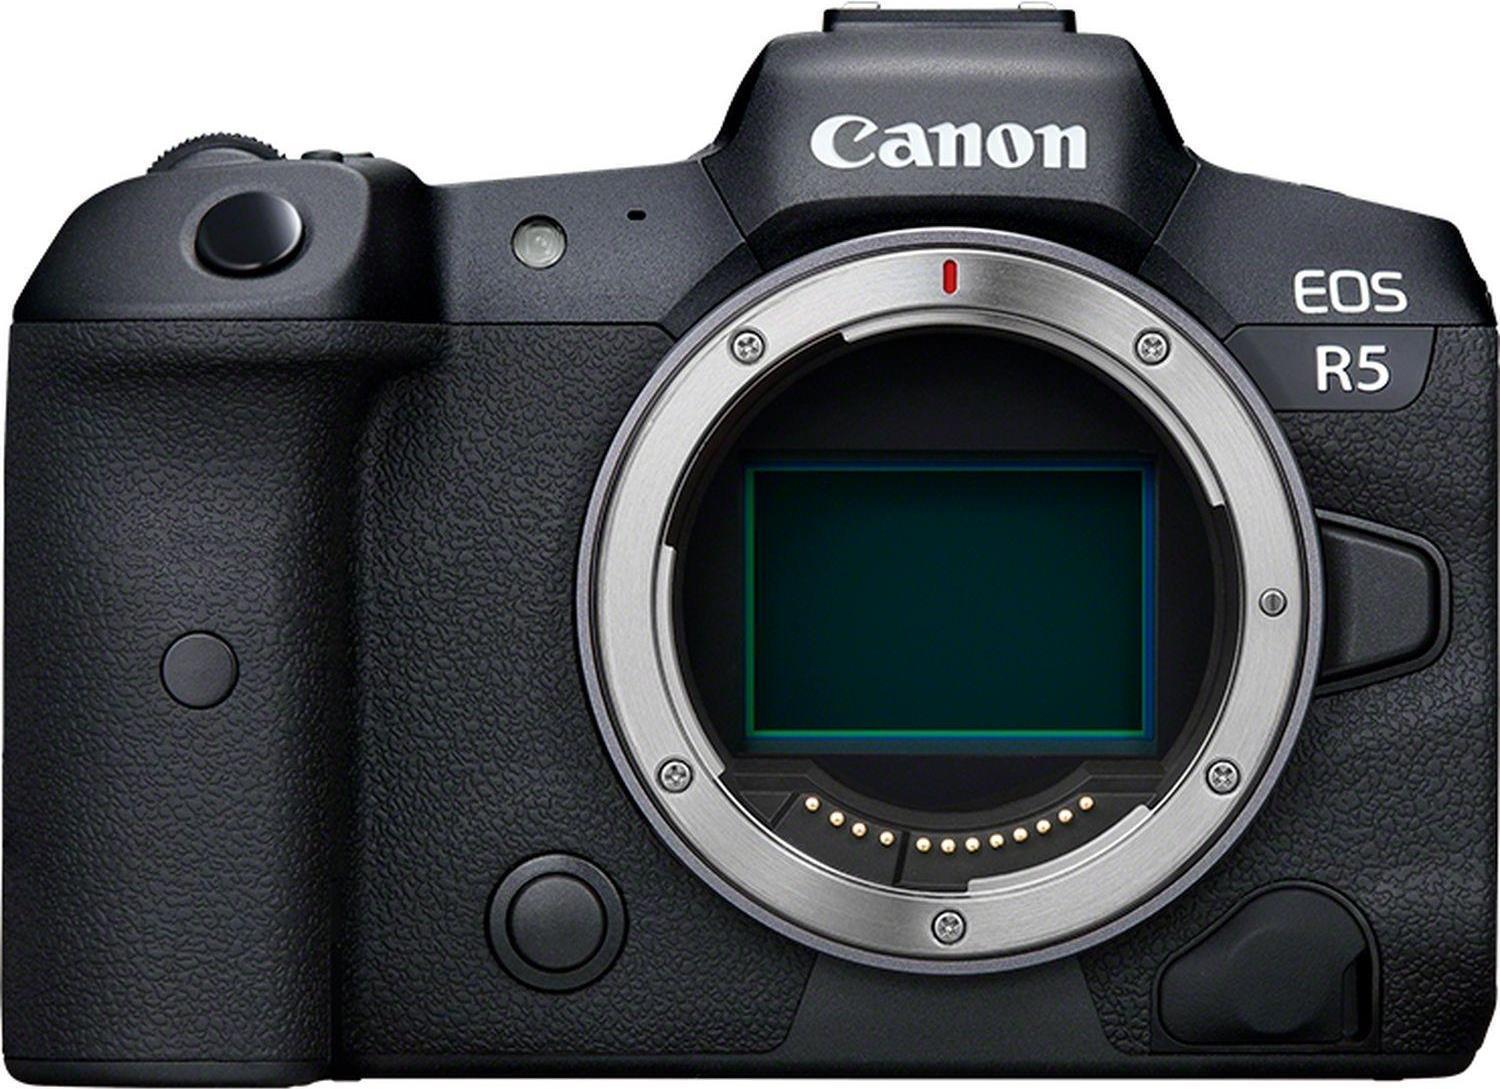 Canon EOS R5 Vollformat Systemkamera - Gehäuse (spiegellos, 45 MP, DIGIC X, 8K RAW, 4K 120p, 5 Achsen Bildstabilisator, 8,01 cm LCD II, WLAN, Bluetooth, USB 3.1, Dual Pixel CMOS AF II), schwarz